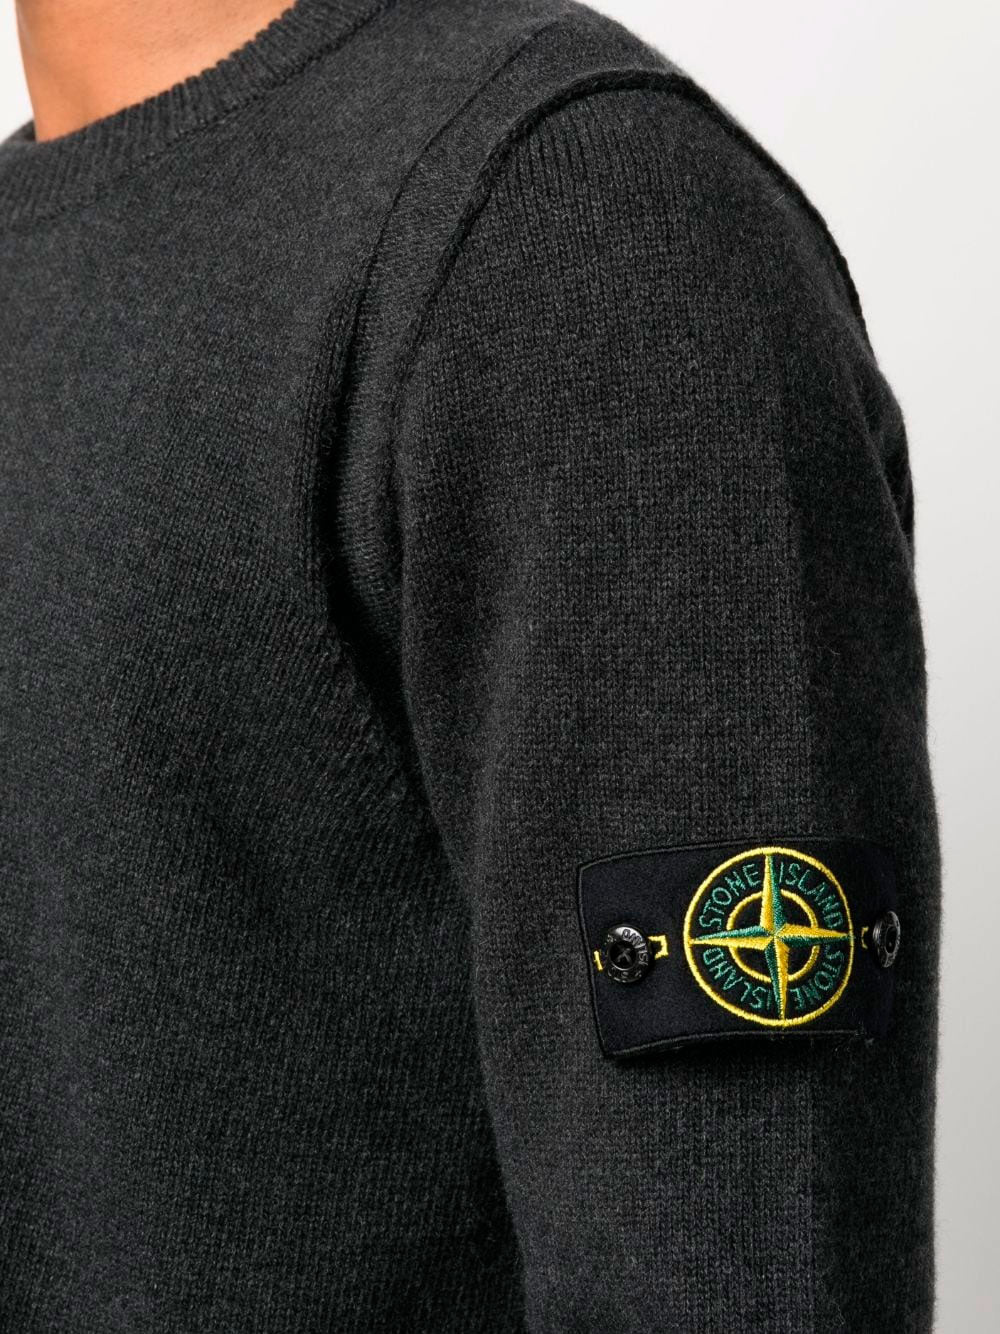 Compass-motif cotton jumper